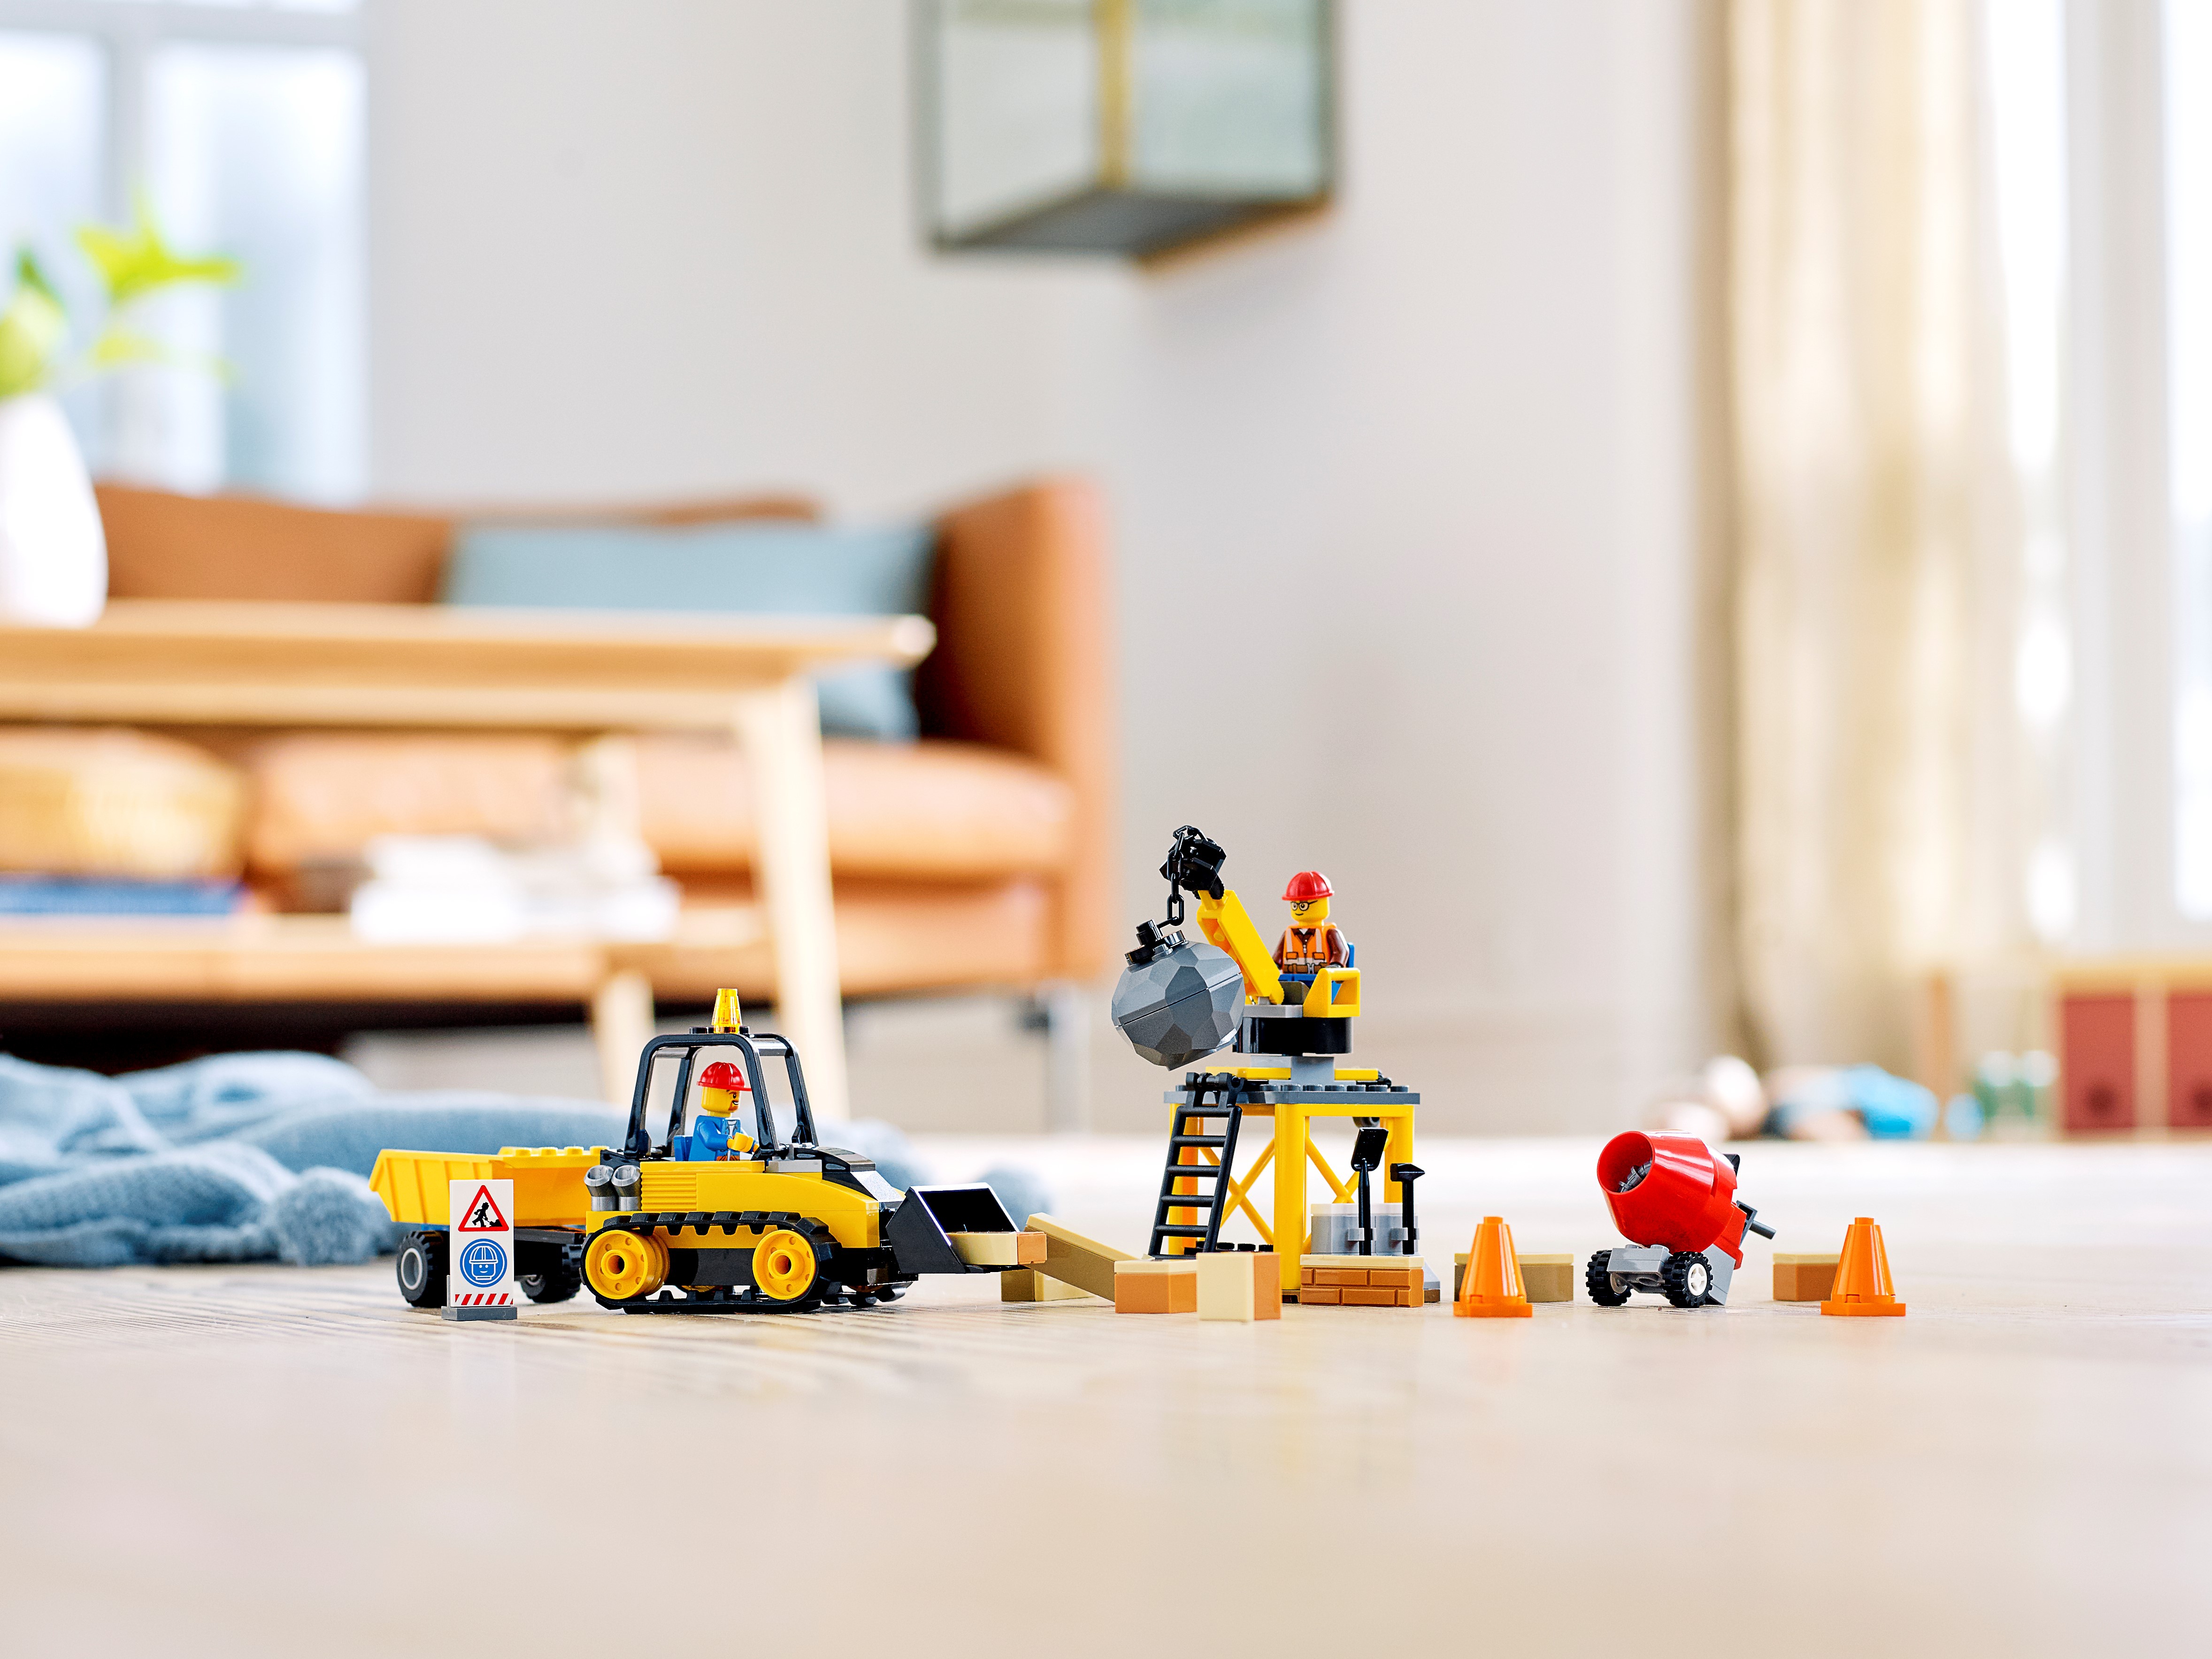 60252 Lego City Construction Bulldozer